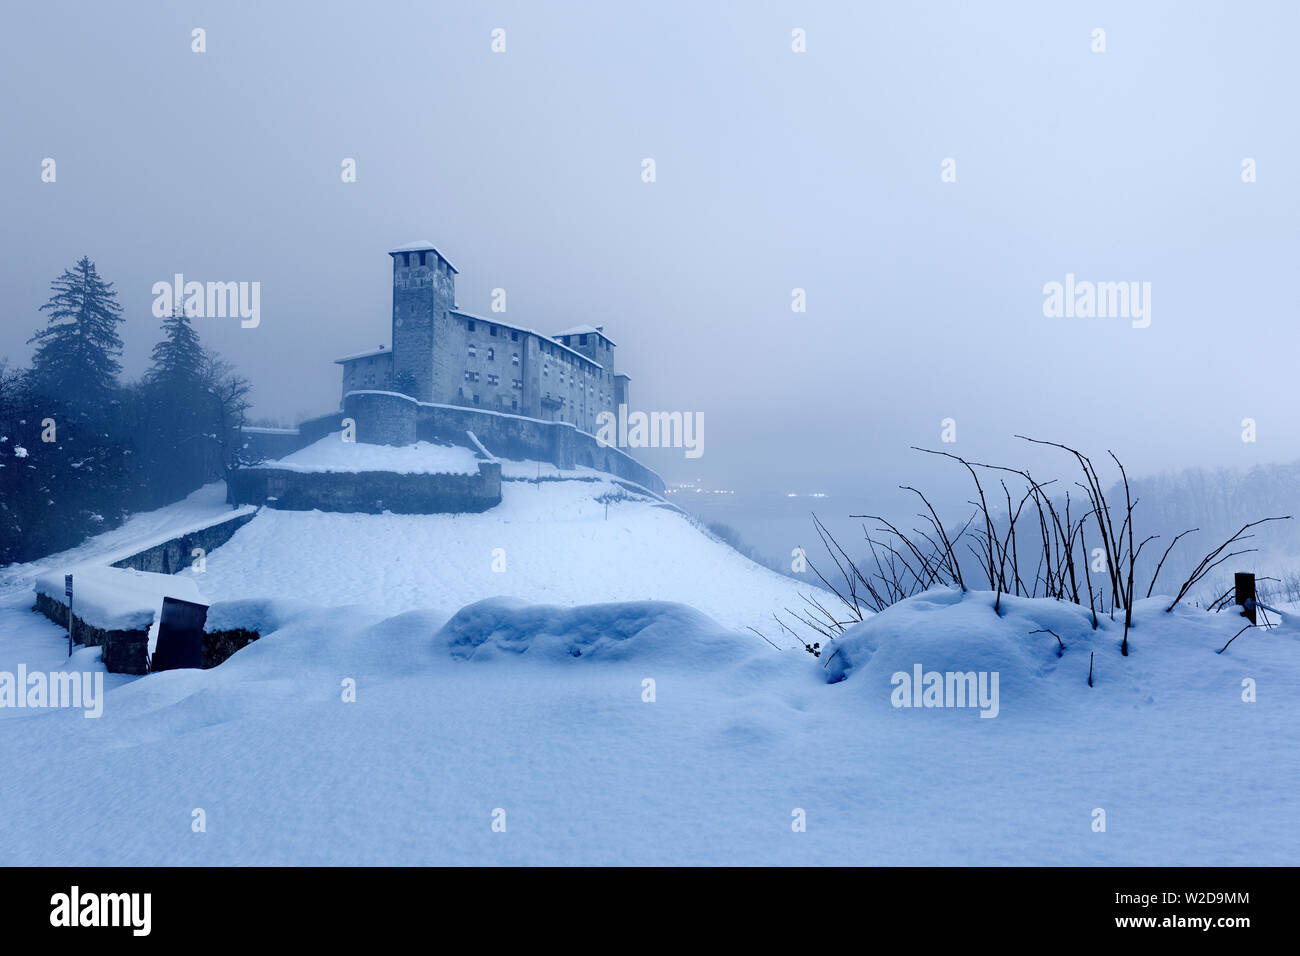 Notte invernale al castello di Cles. Val di Non, in provincia di Trento, Trentino Alto Adige, Italia, Europa. Foto Stock